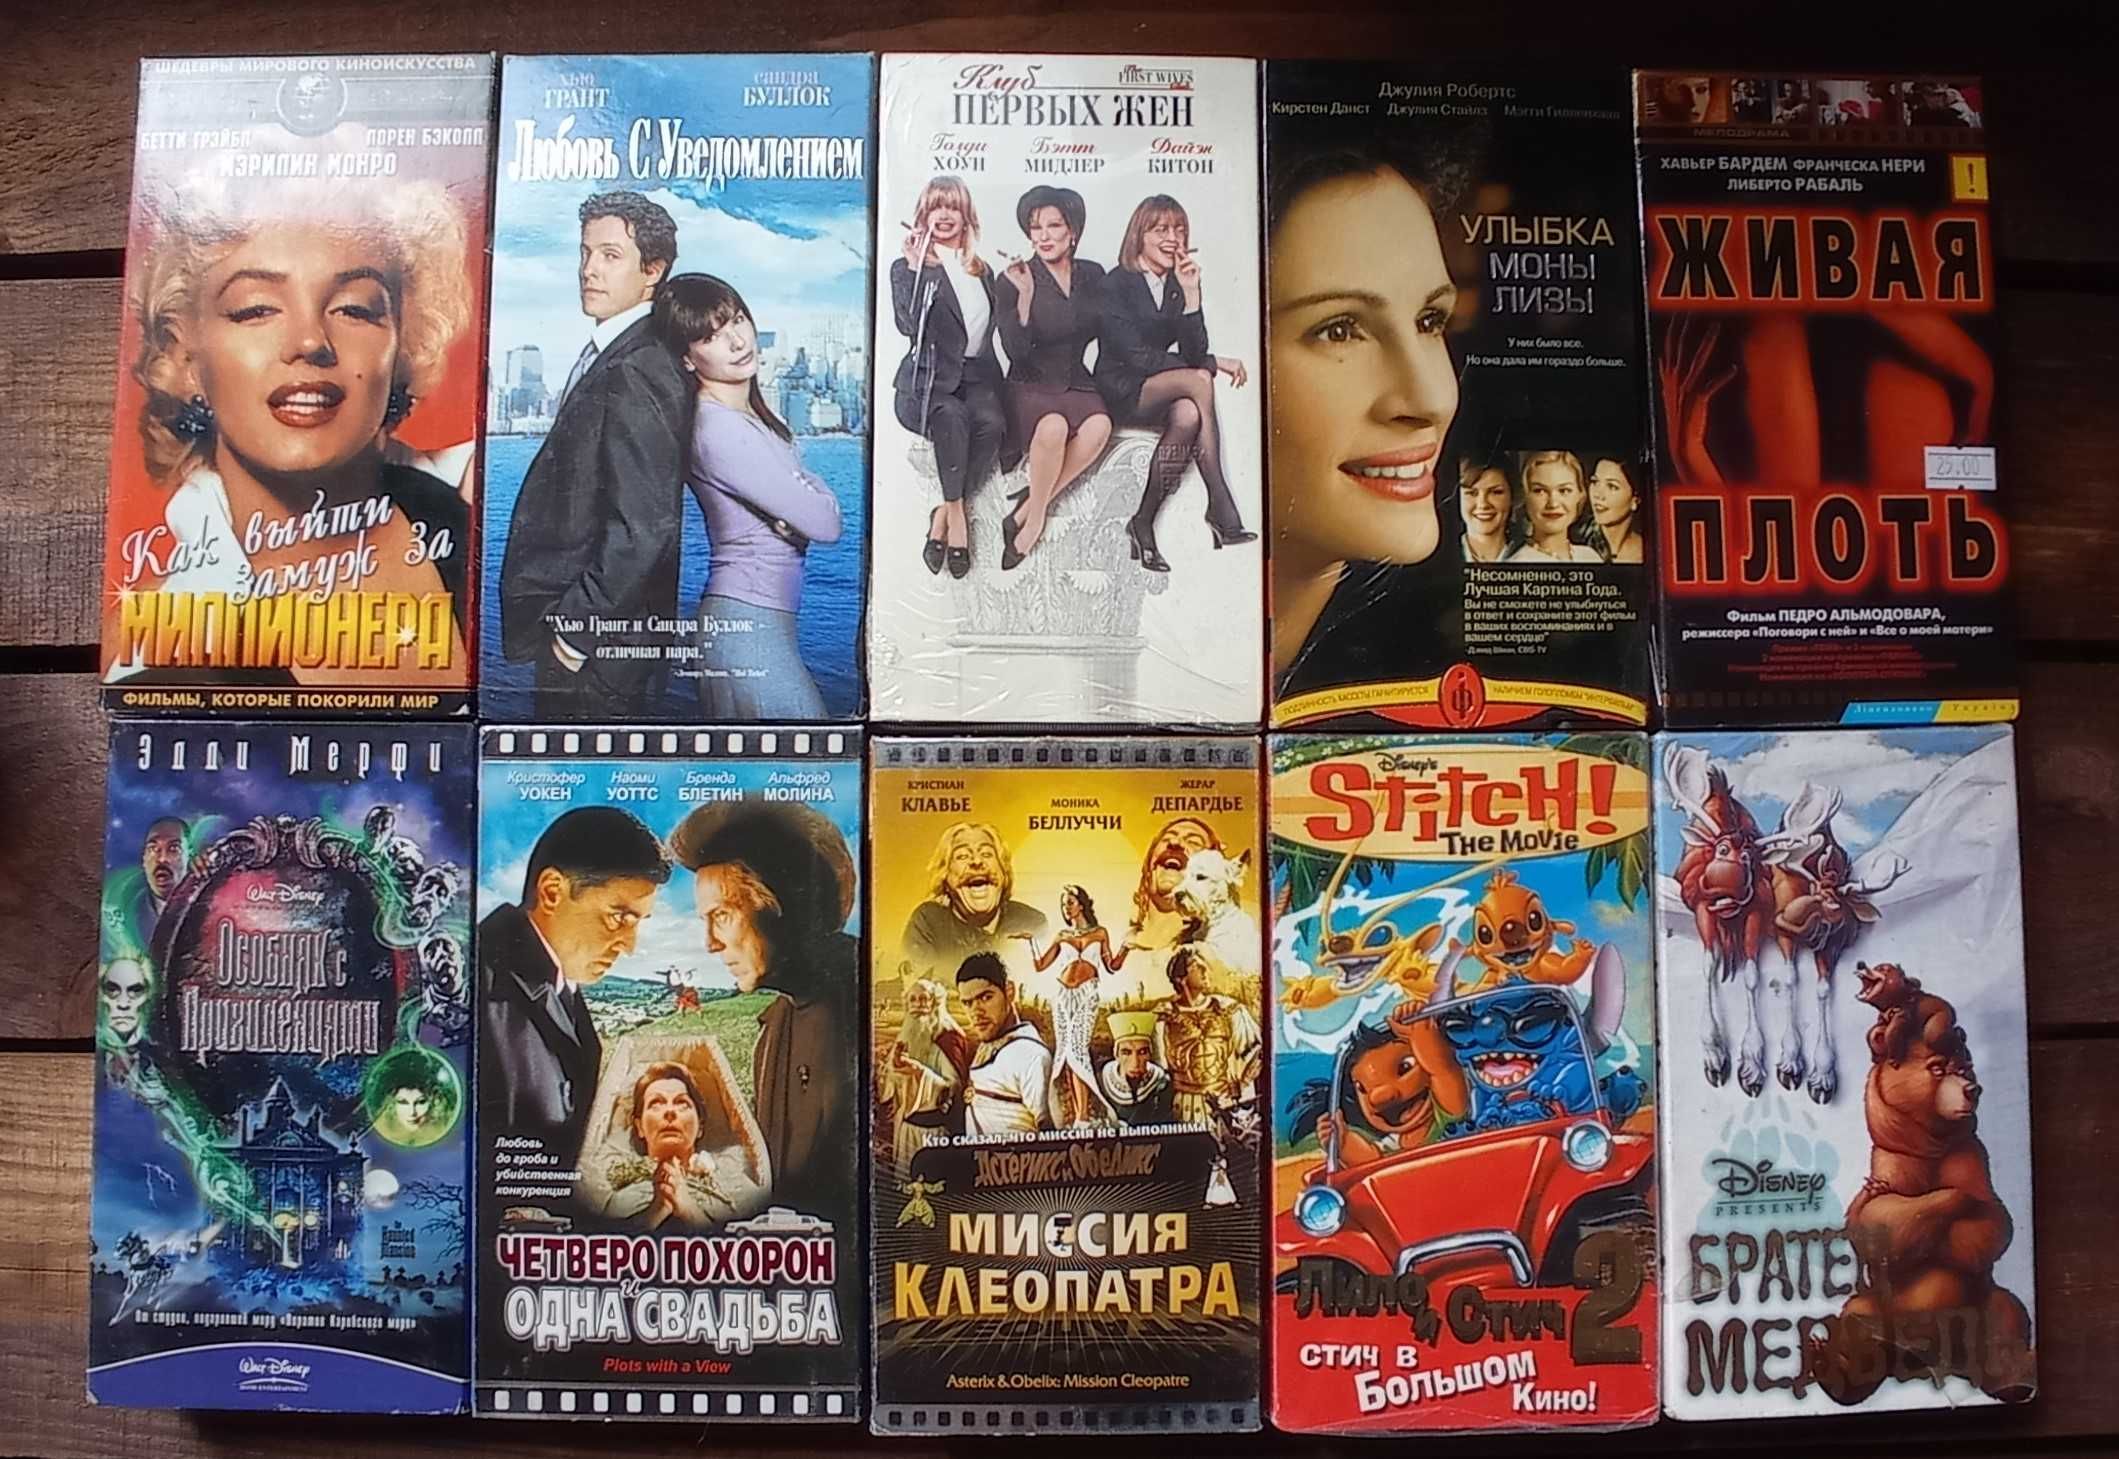 Видеокассеты: Мультфильмы, комедии, мелодрамы. Советские фильмы.